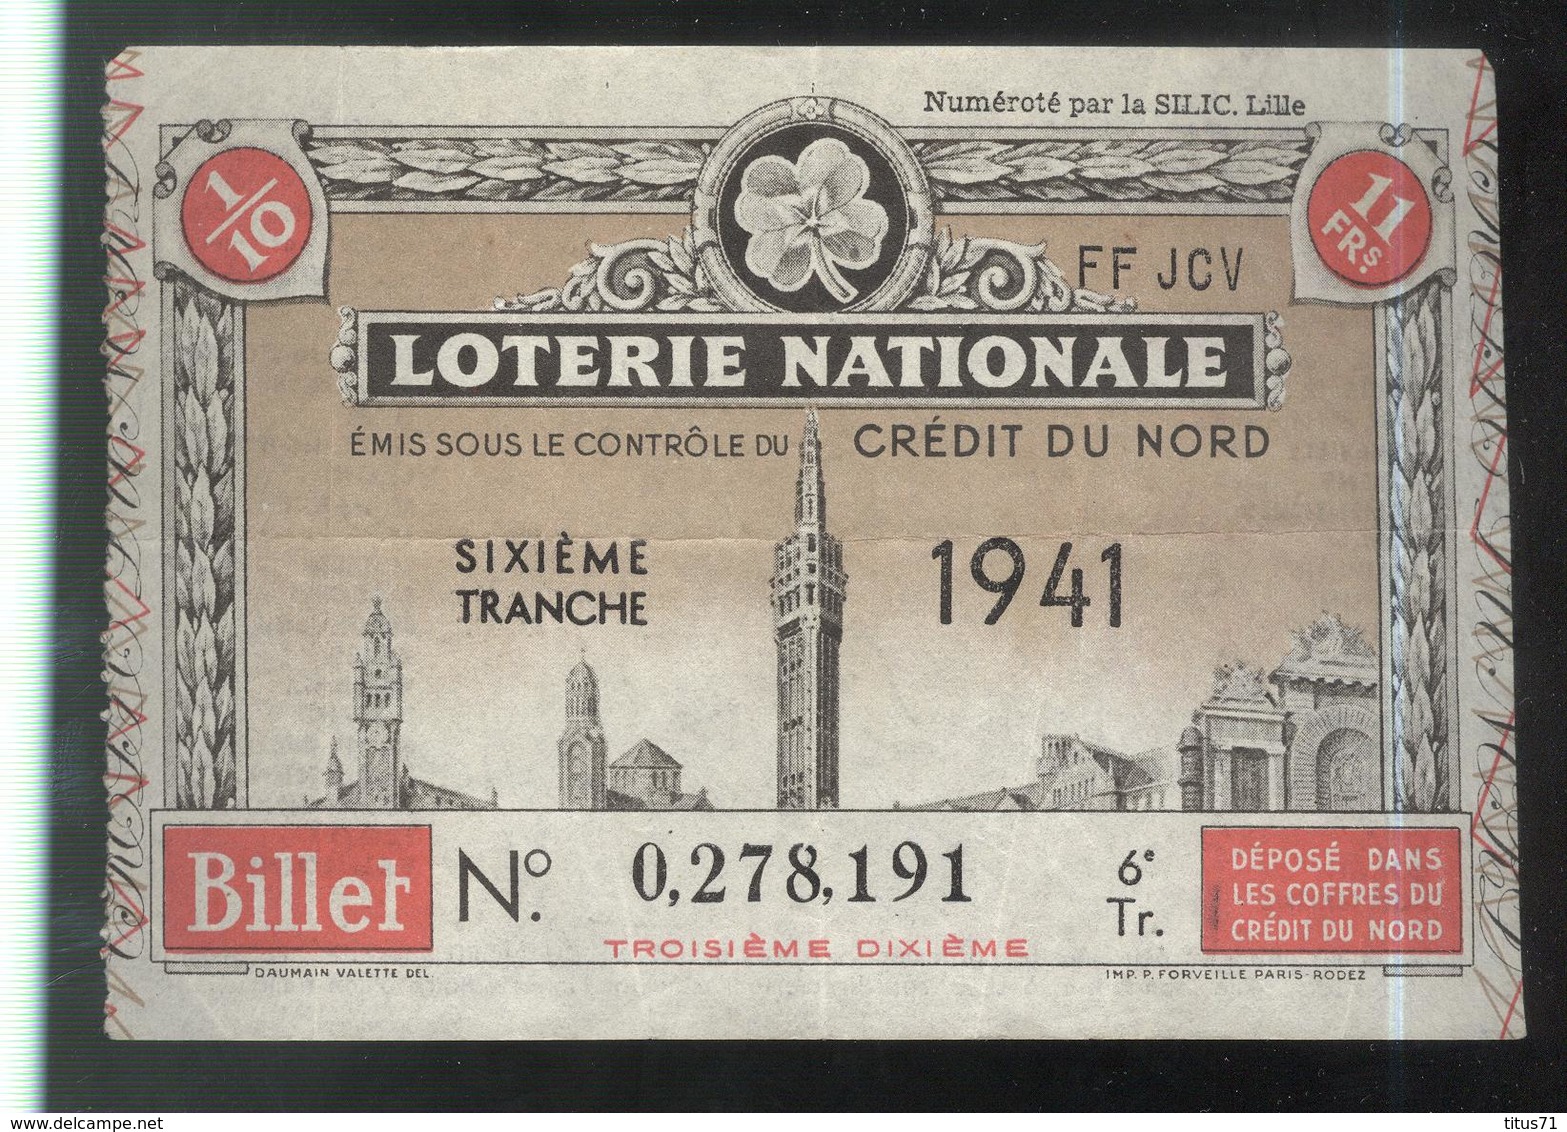 Billet De Loterie Nationale - Emis Sous Le Contrôle Du Crédit Du Nord - 6ème Tranche 1941 - Billets De Loterie